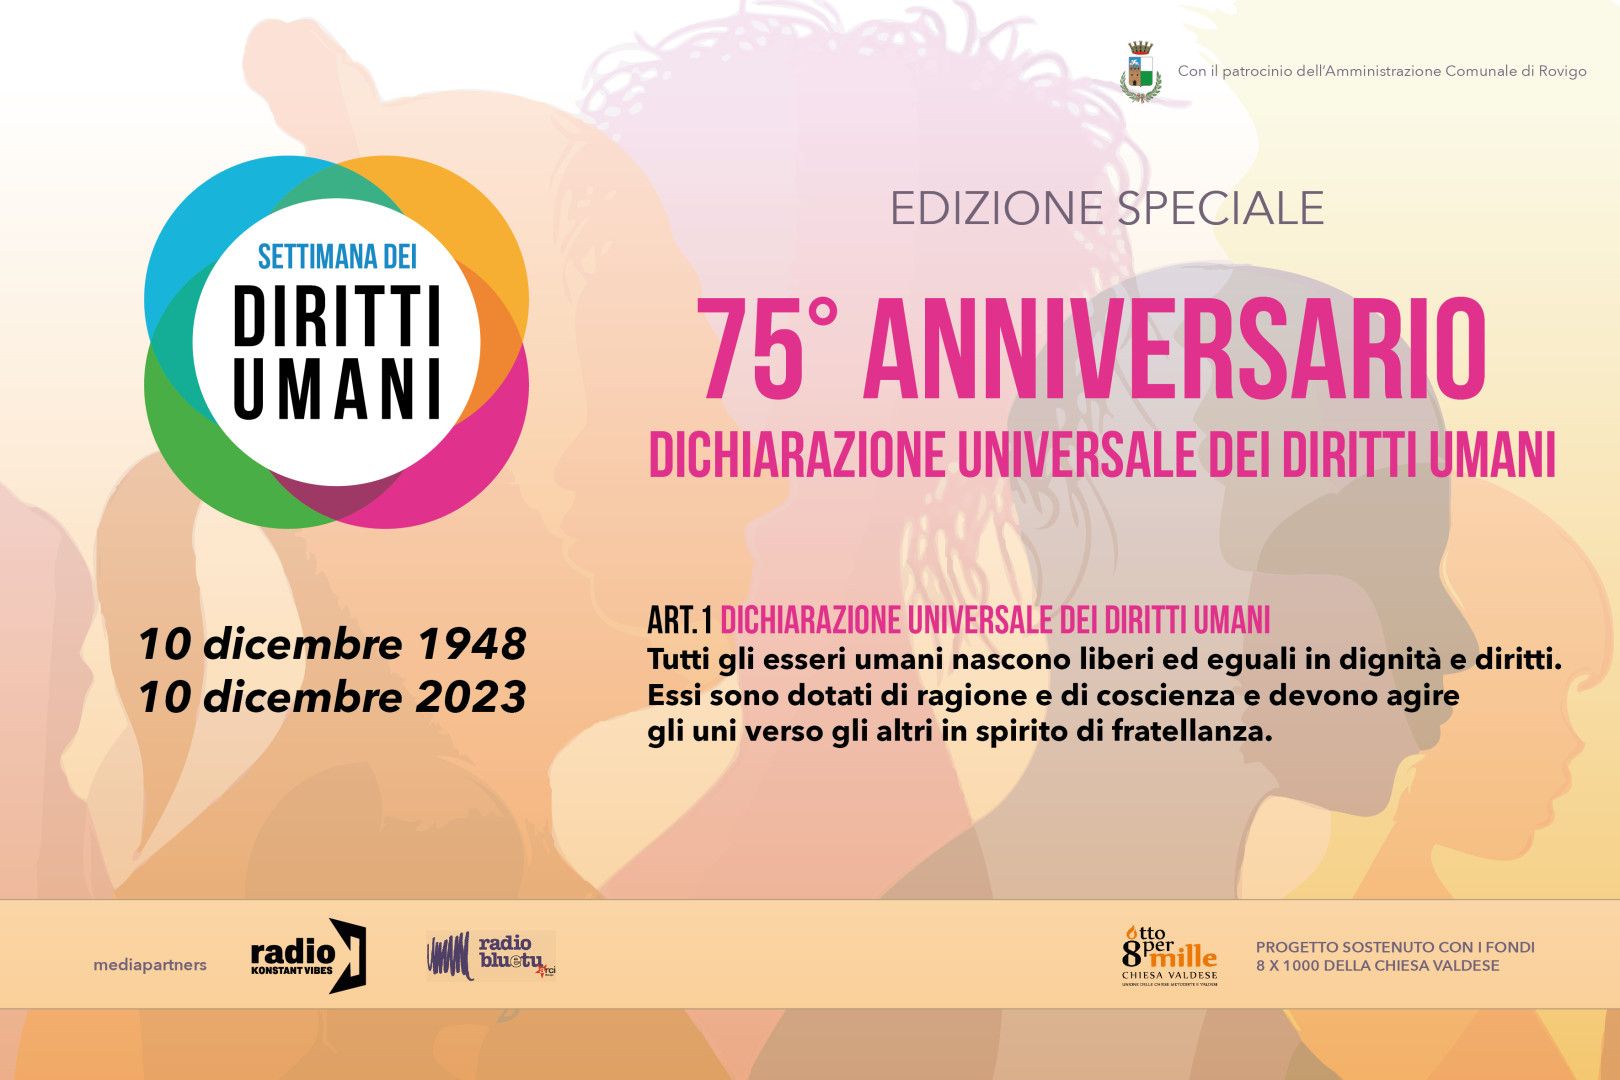 Ritorna la “Settimana dei diritti umani” per il 75° Anniversario della Dichiarazione universale